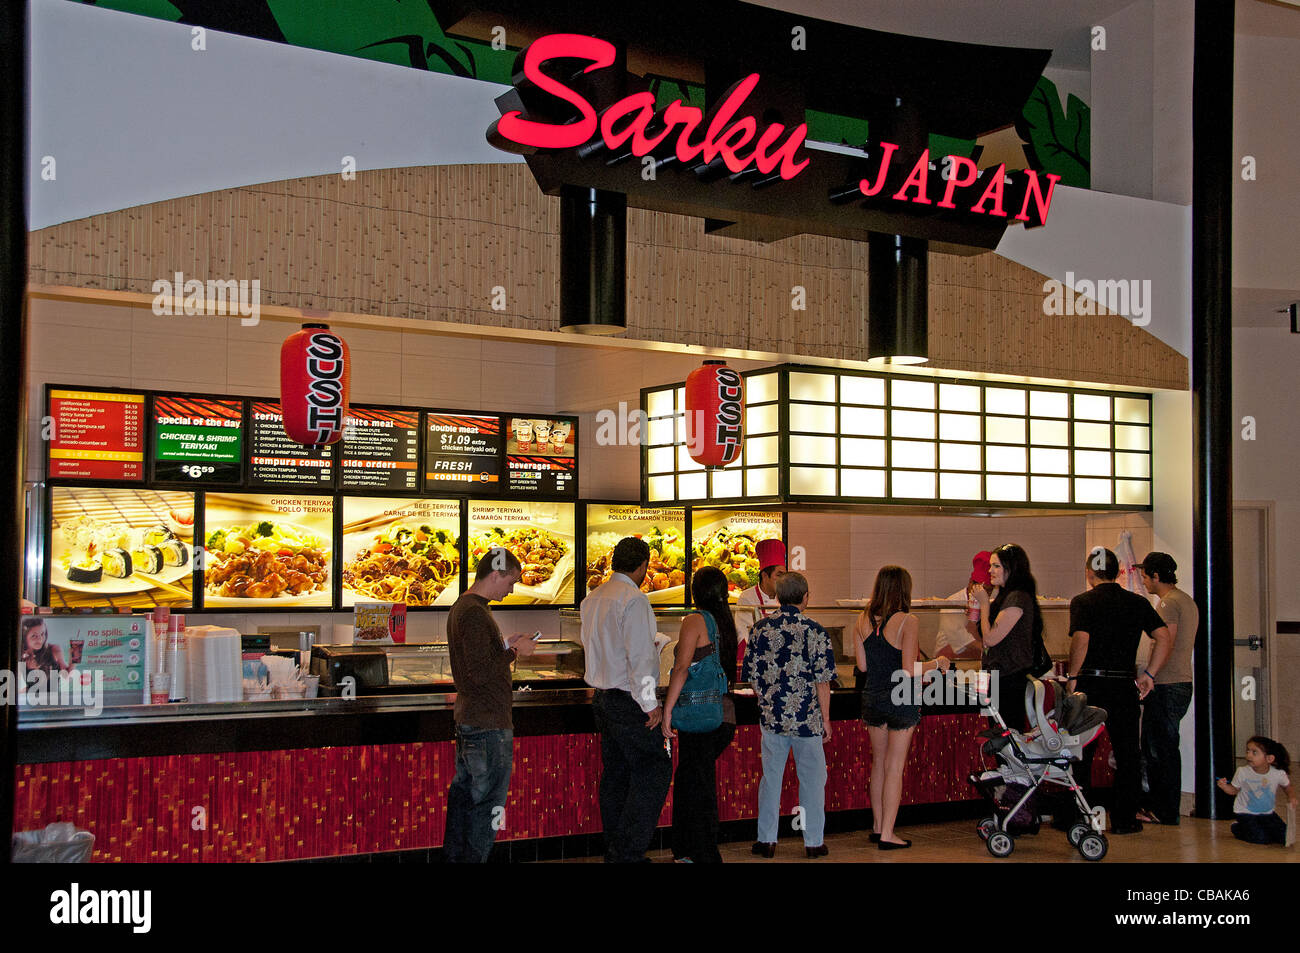 Sarku Japan japanische Sushi Fastfood Einkaufszentrum Food Court Vereinigte Staaten Stockfoto